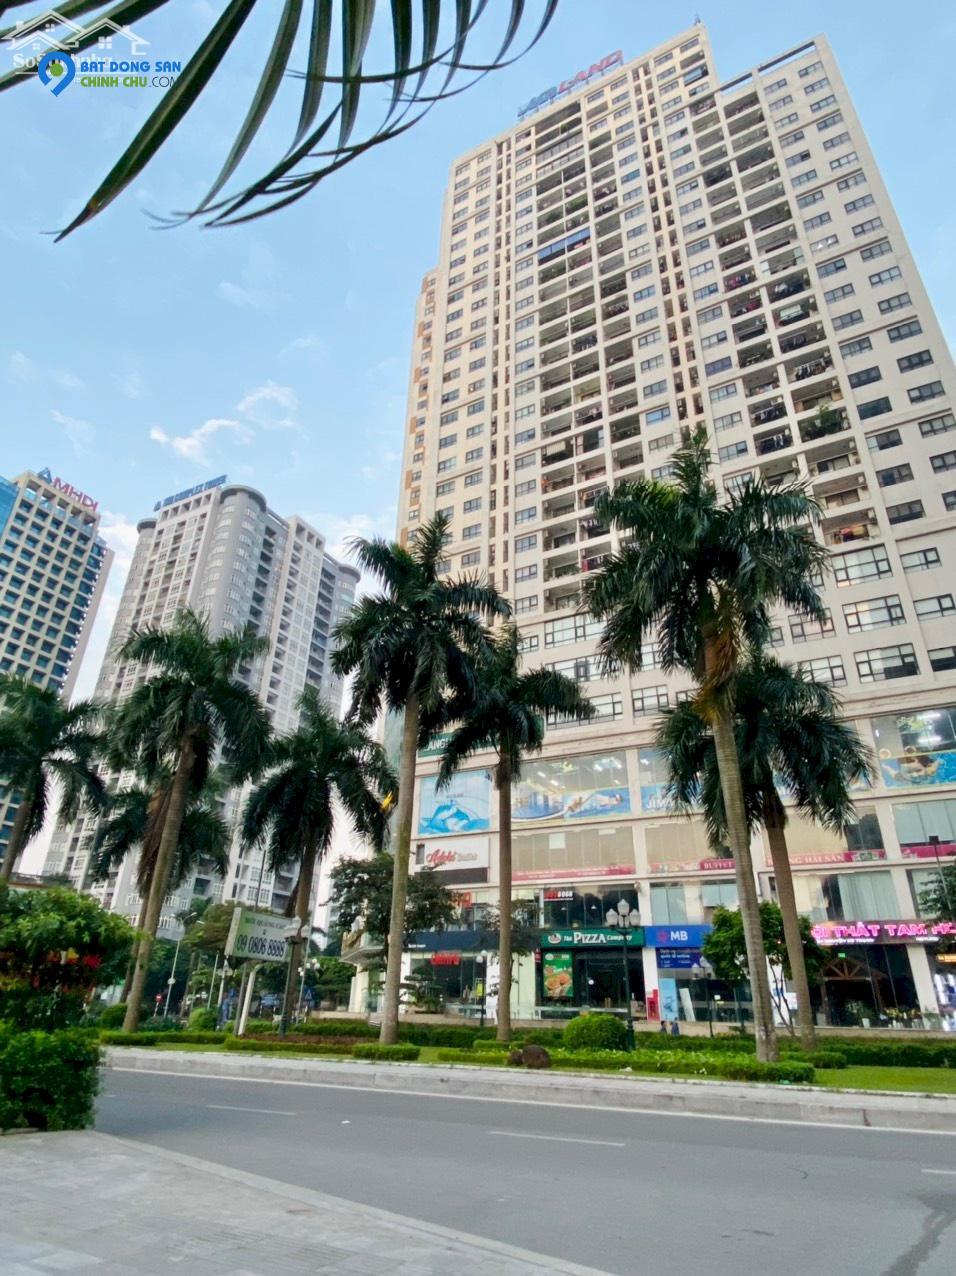 Chính chủ cần bán căn hộ chung cư Nguyễn Cơ Thạch, trung tâm quận Nam Từ Liêm Hà Nội (miễn trung gian mô giới)